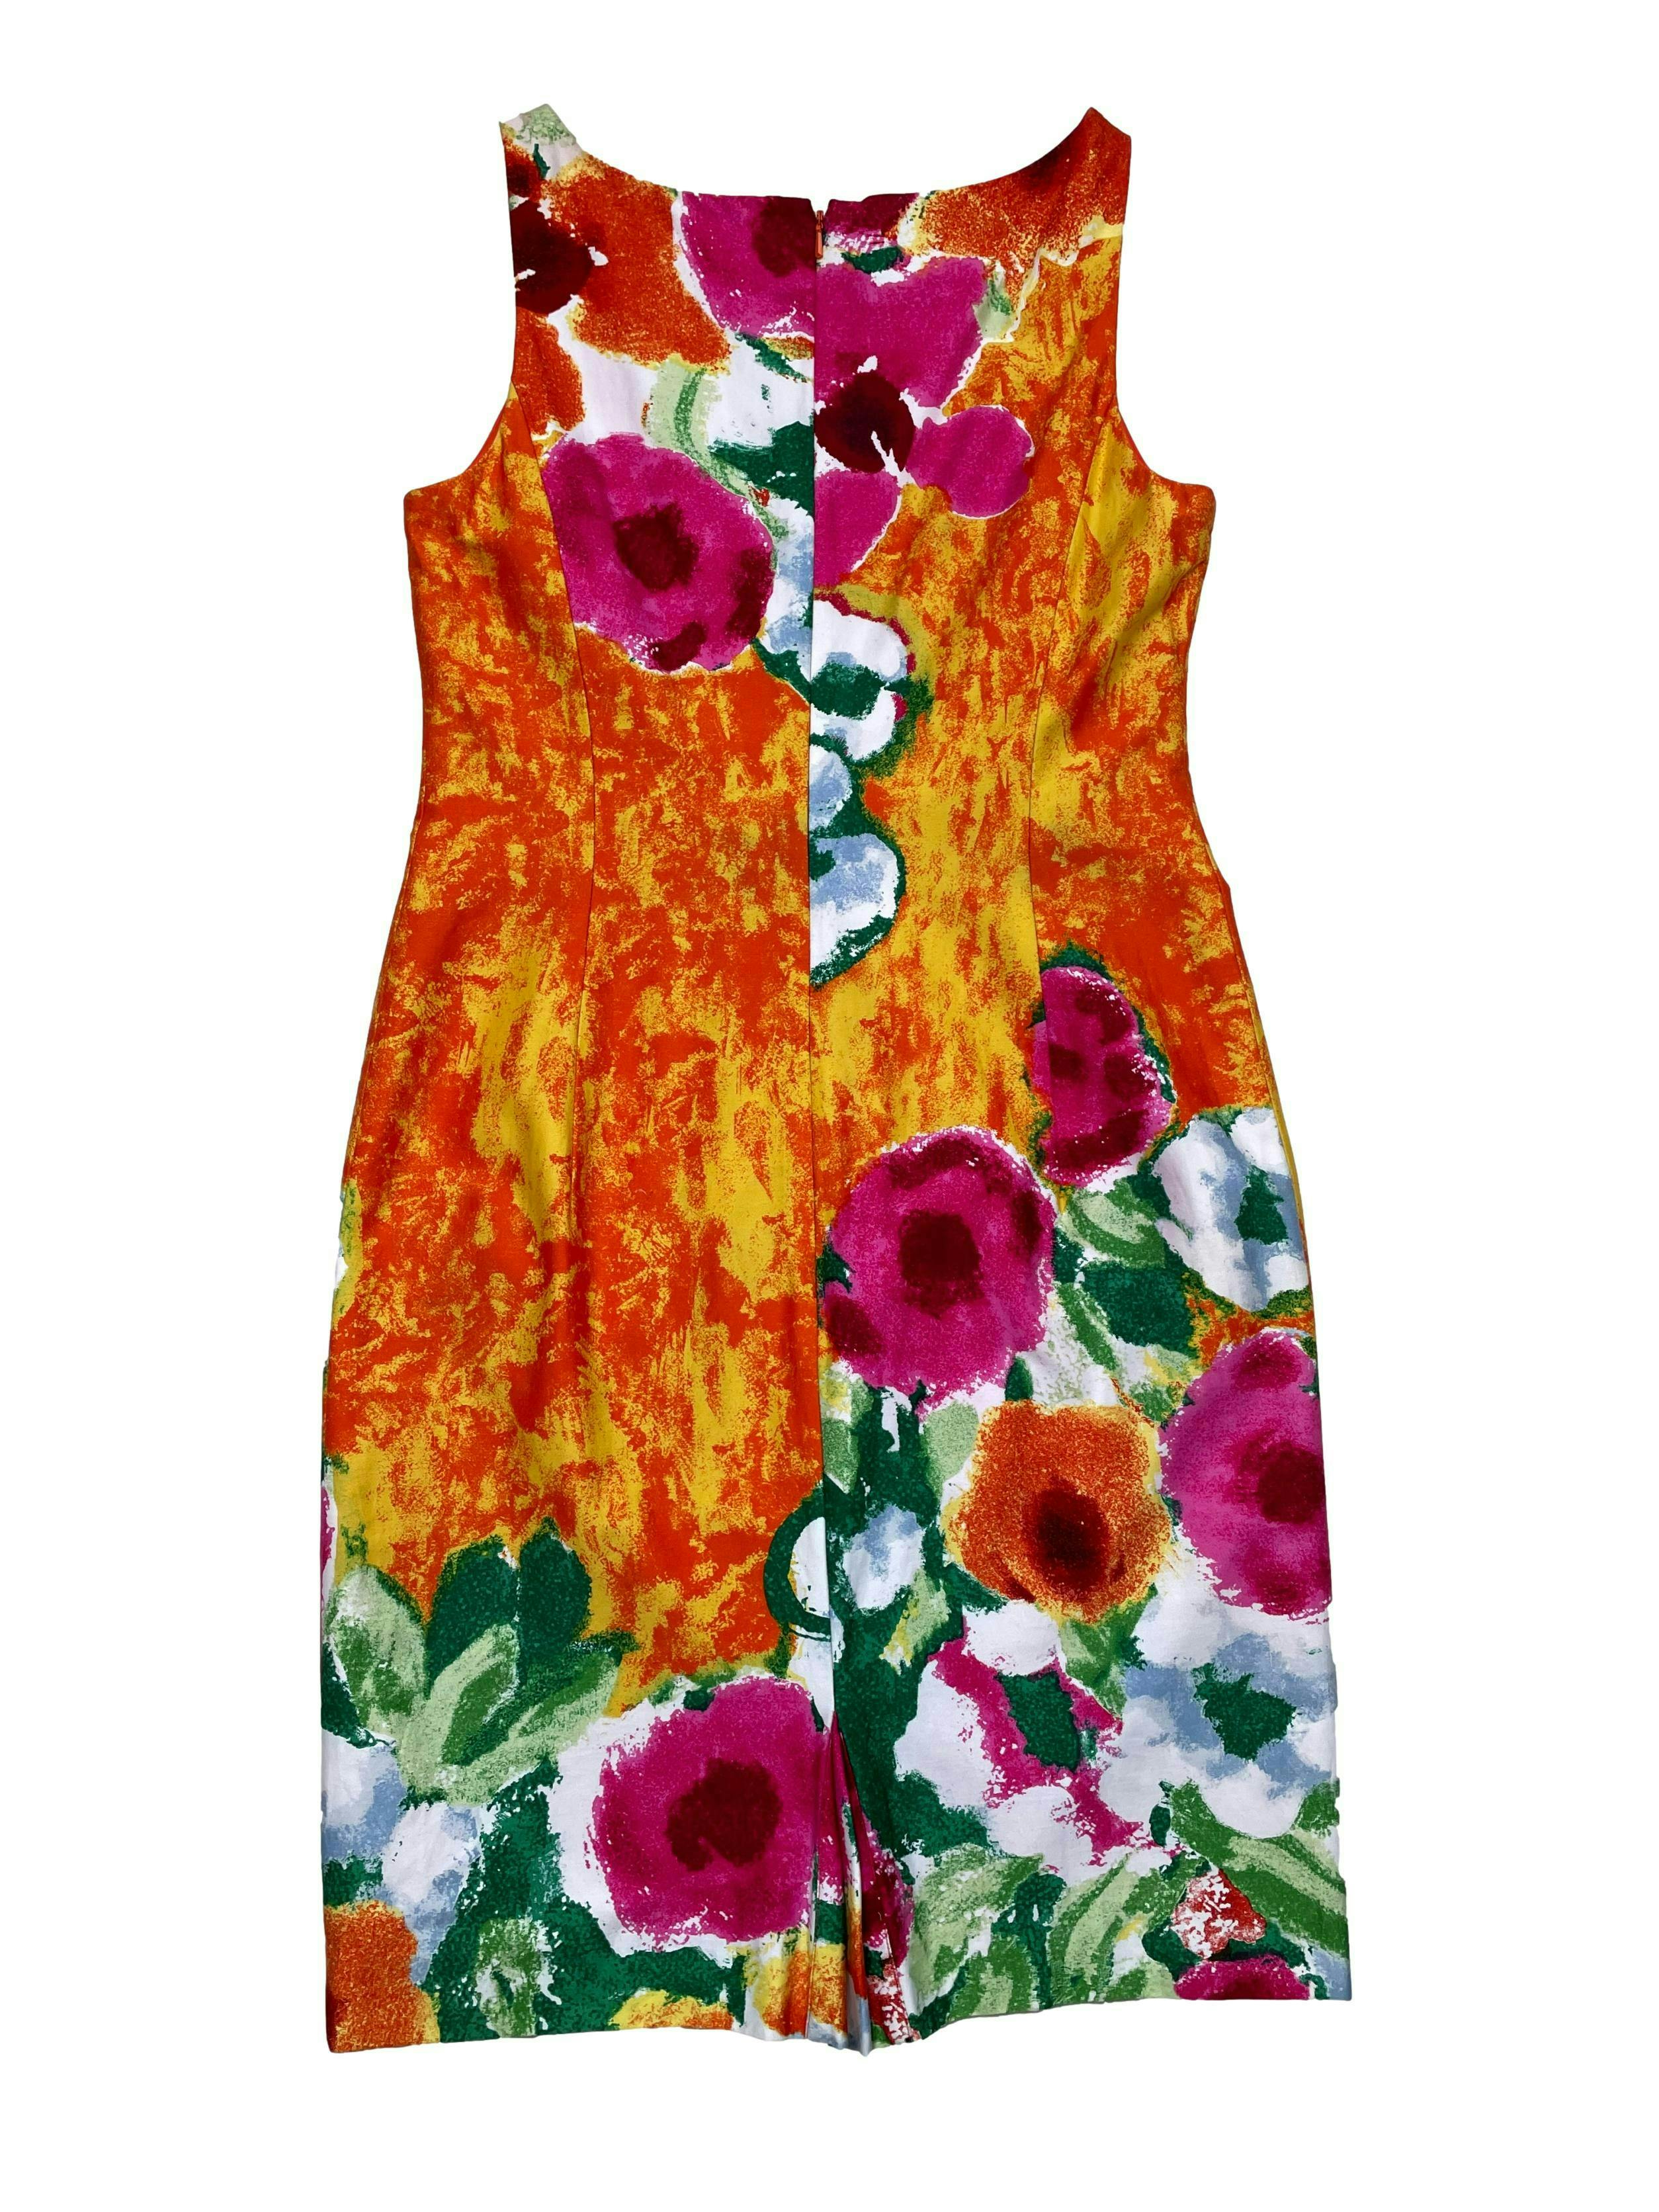 Vestido Jones New York de colores con flores tipo acuarela, 97% algodón, forrado con cierre en la espalda. Busto 90cm Cintura 76cm Largo 92cm. Precio original S/ 300